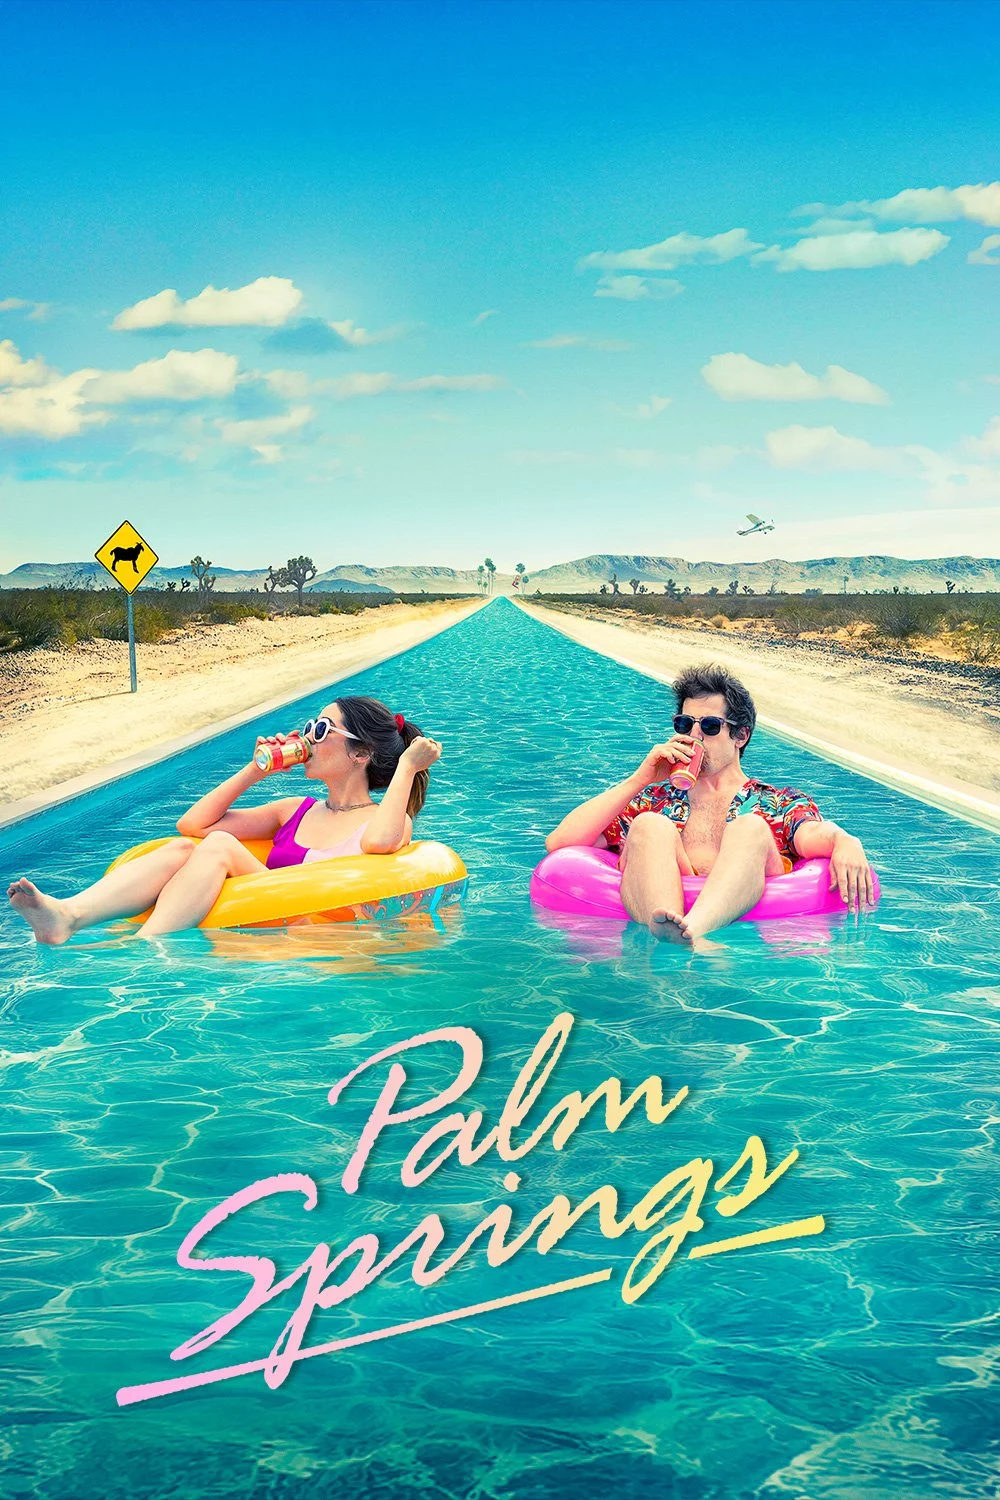 Palm Springs - Trailer (Official) • A Hulu Original Film